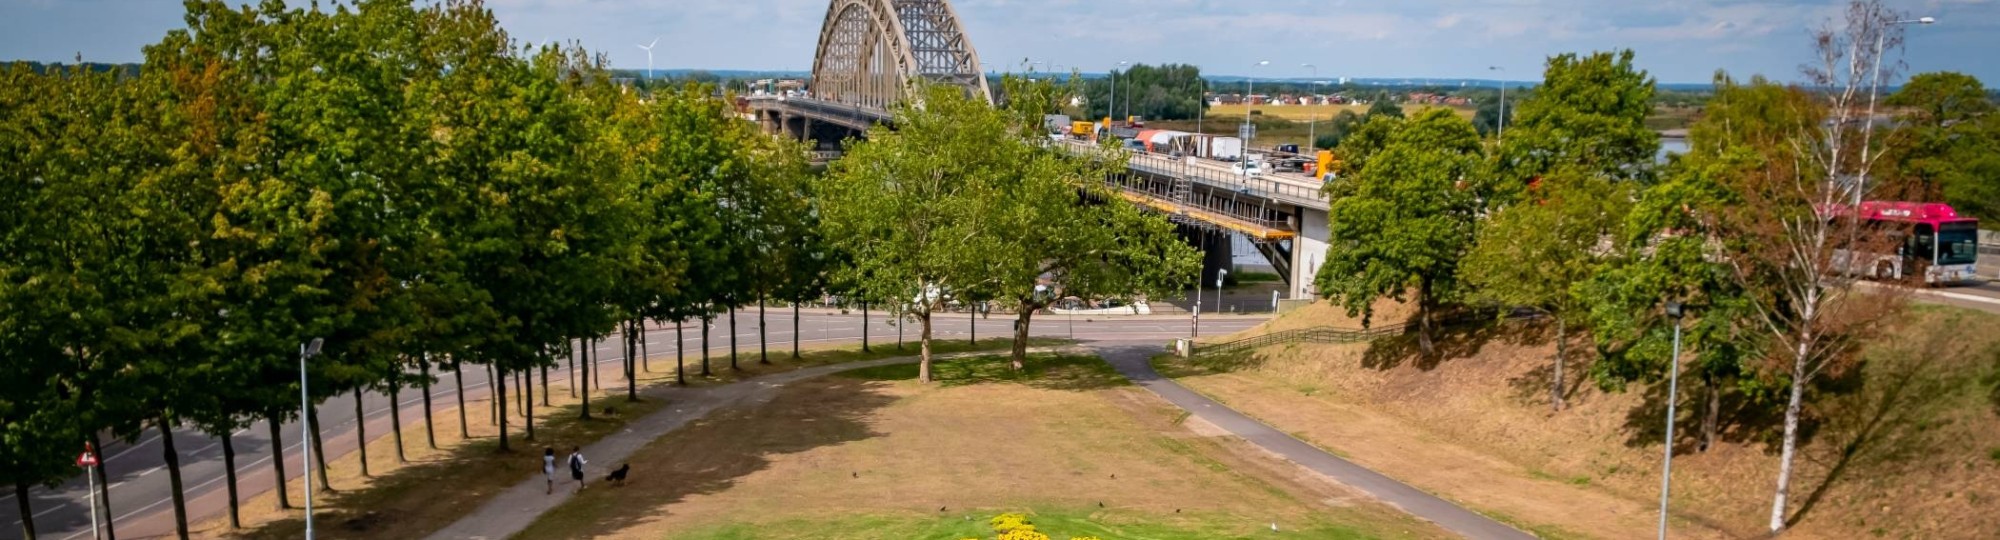 Uitzicht op Waalbrug en Noviomagus in Nijmegen